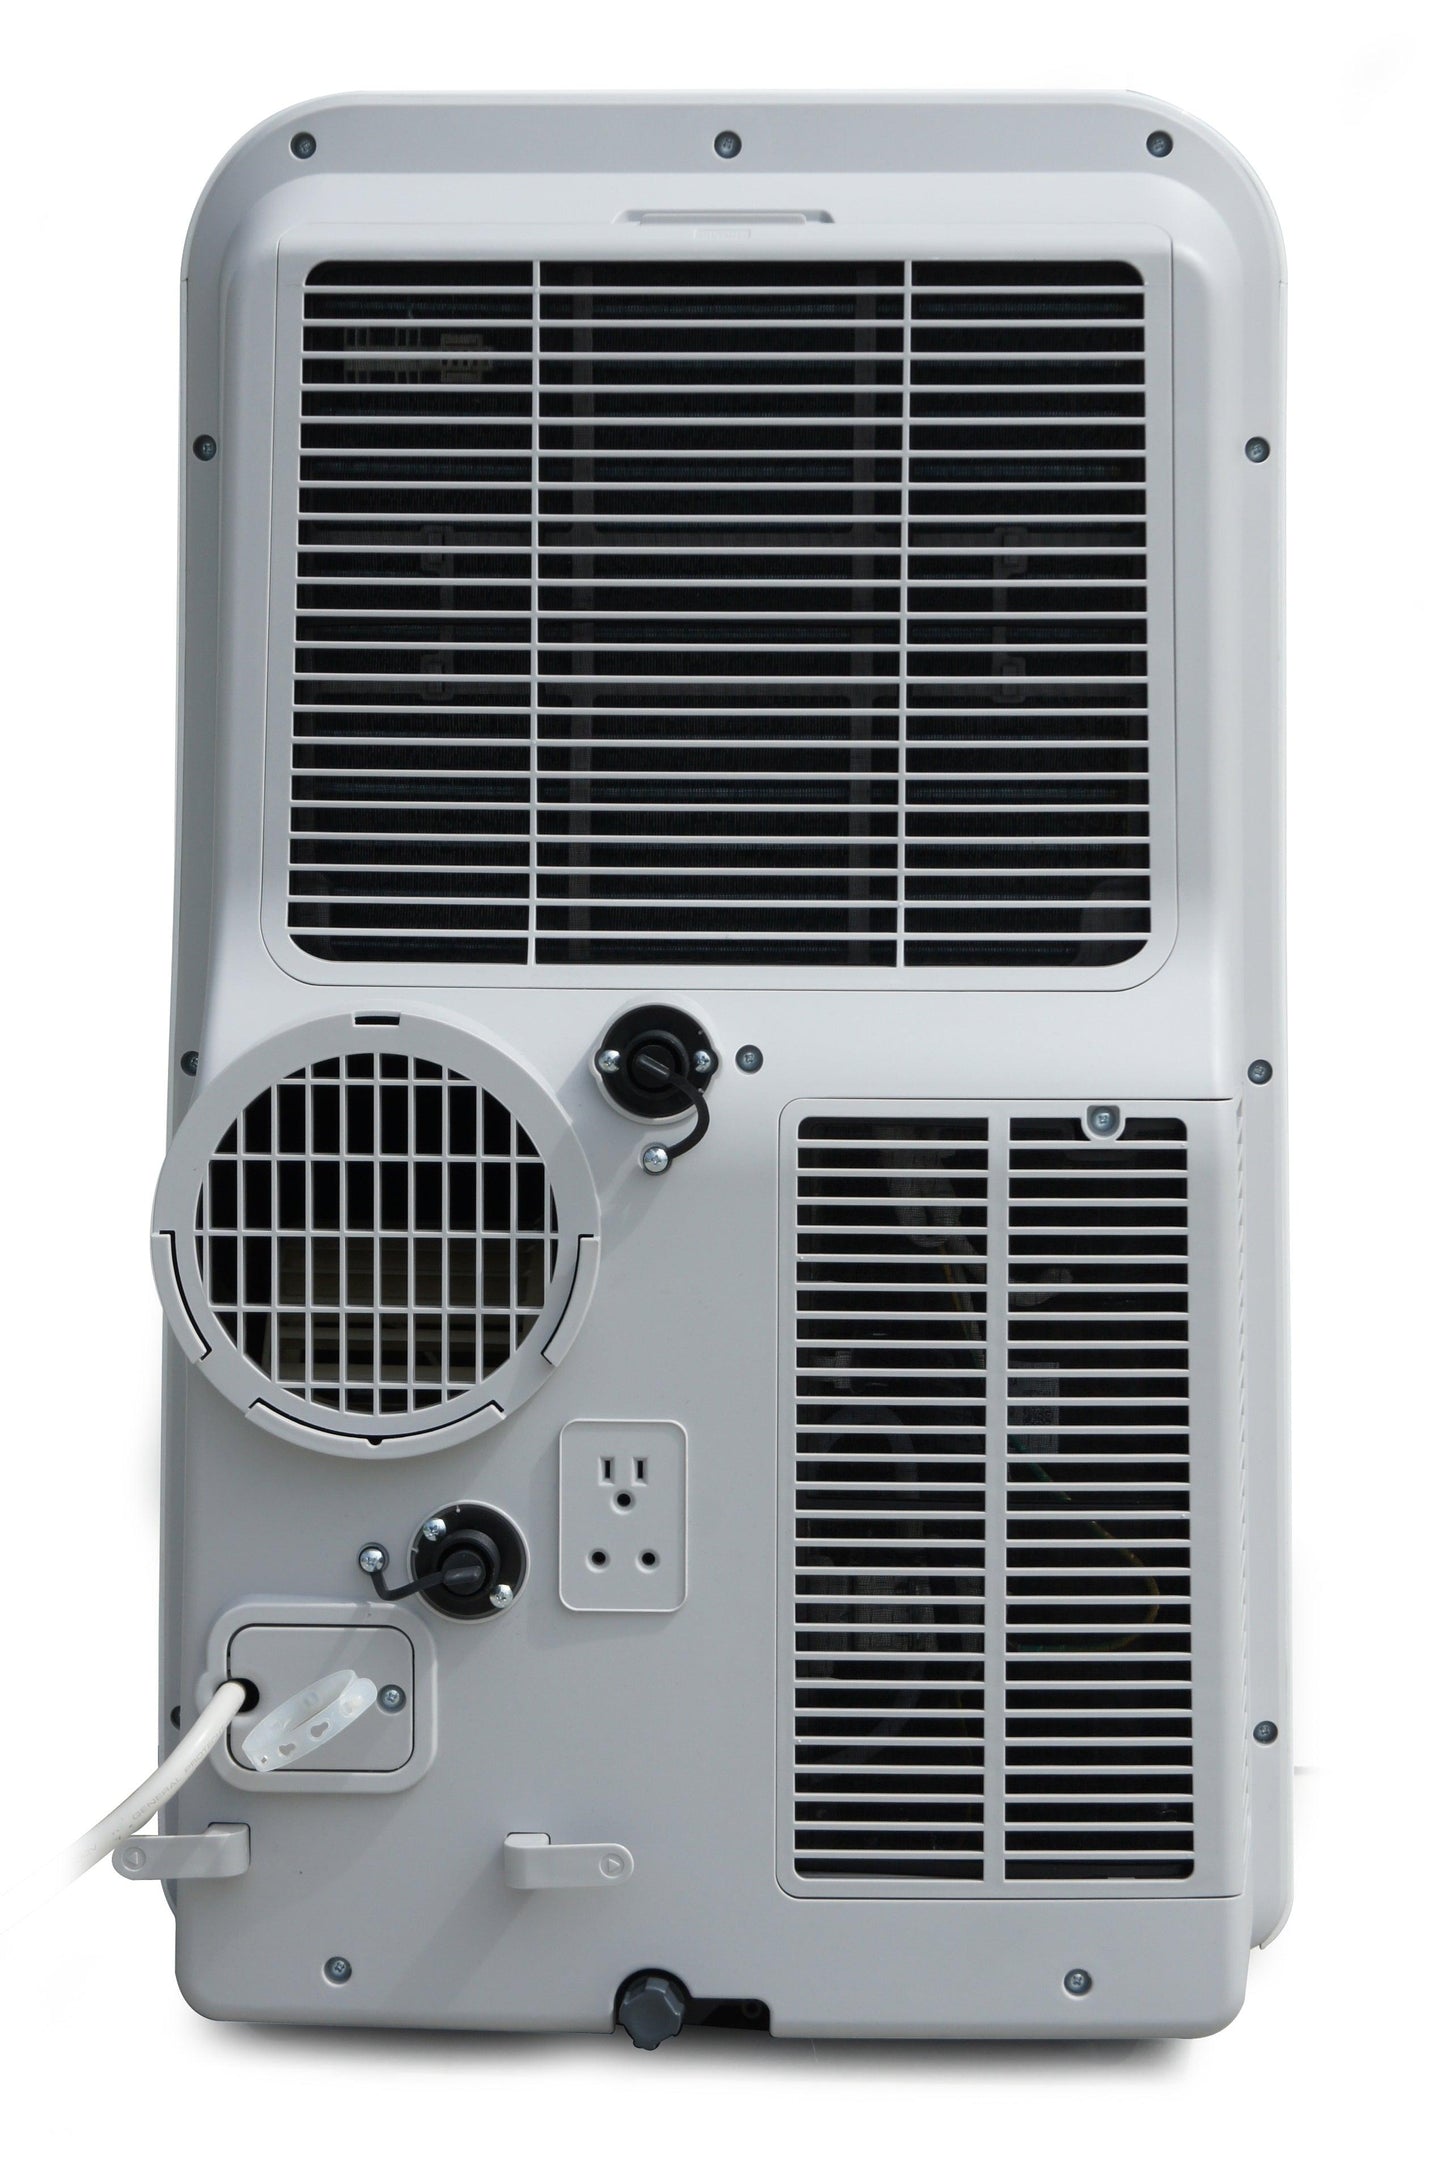 SPT 14,000BTU Portable AC w/Dehumidify & FOLLOW ME (SACC: 9,000BTU) - Elite Air Purifiers